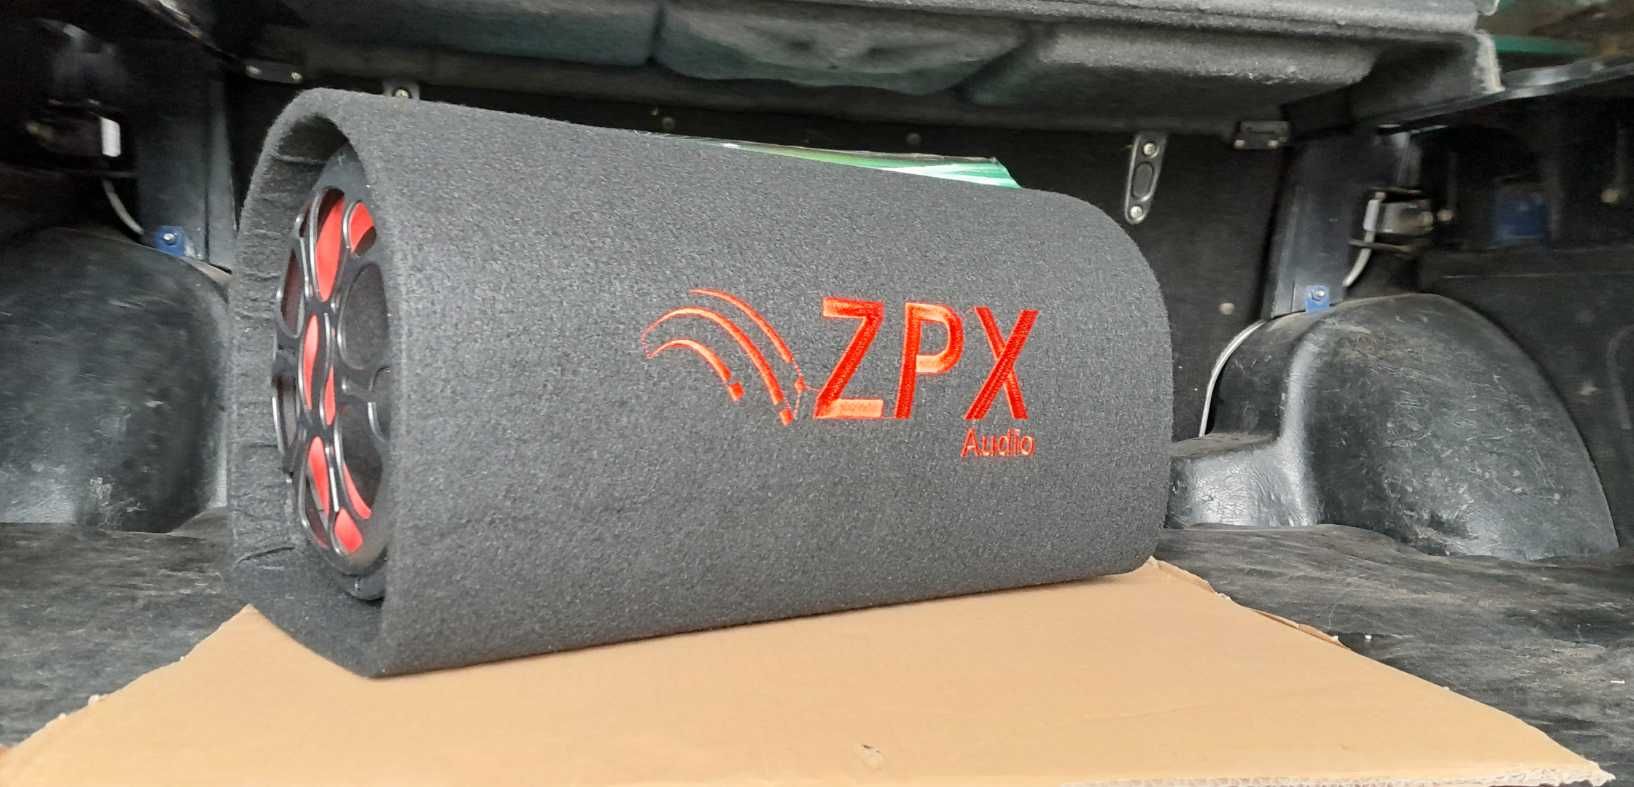 активный сабвуфер Zpx с диаметром 8дюймов и встроенным усилителем